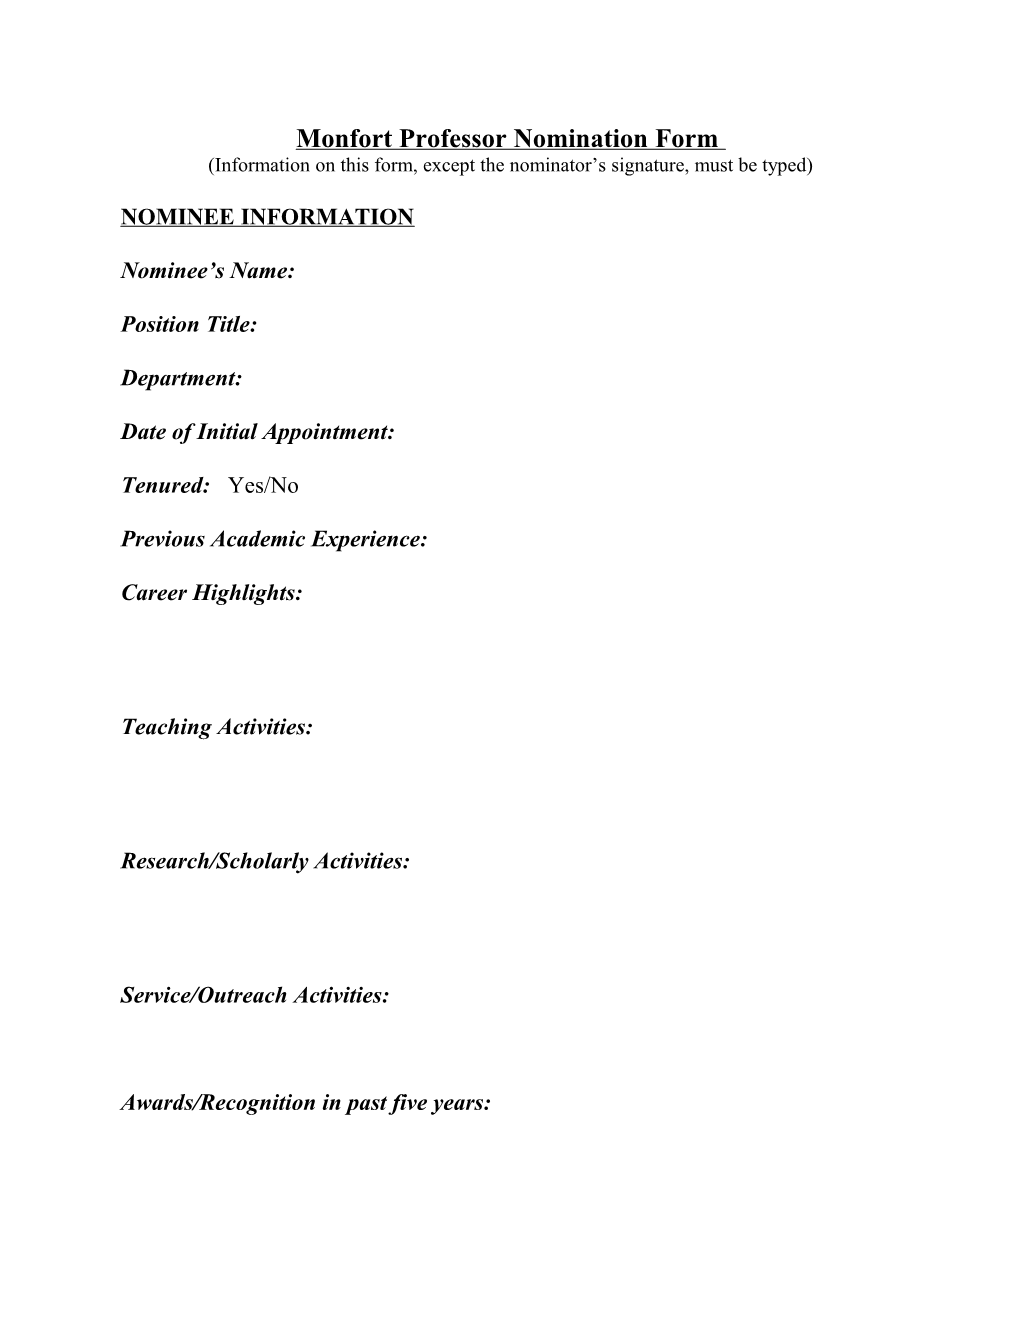 Monfort Professor Nomination Form